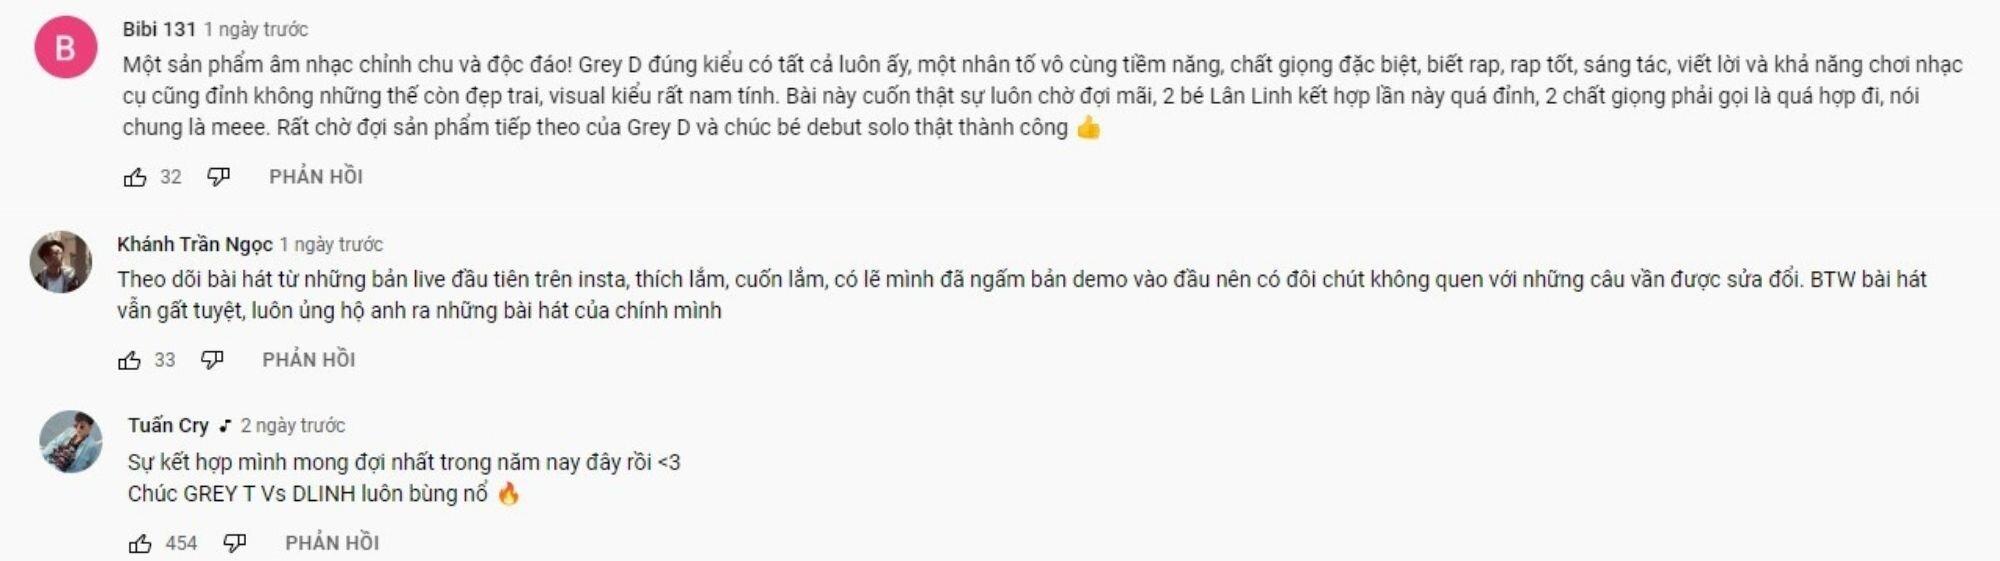 MV 'vaicaunoicokhiennguoithaydoi' nhận được phản ứng tích cực từ cộng đồng nghe nhạc (Nguồn: YouTube)